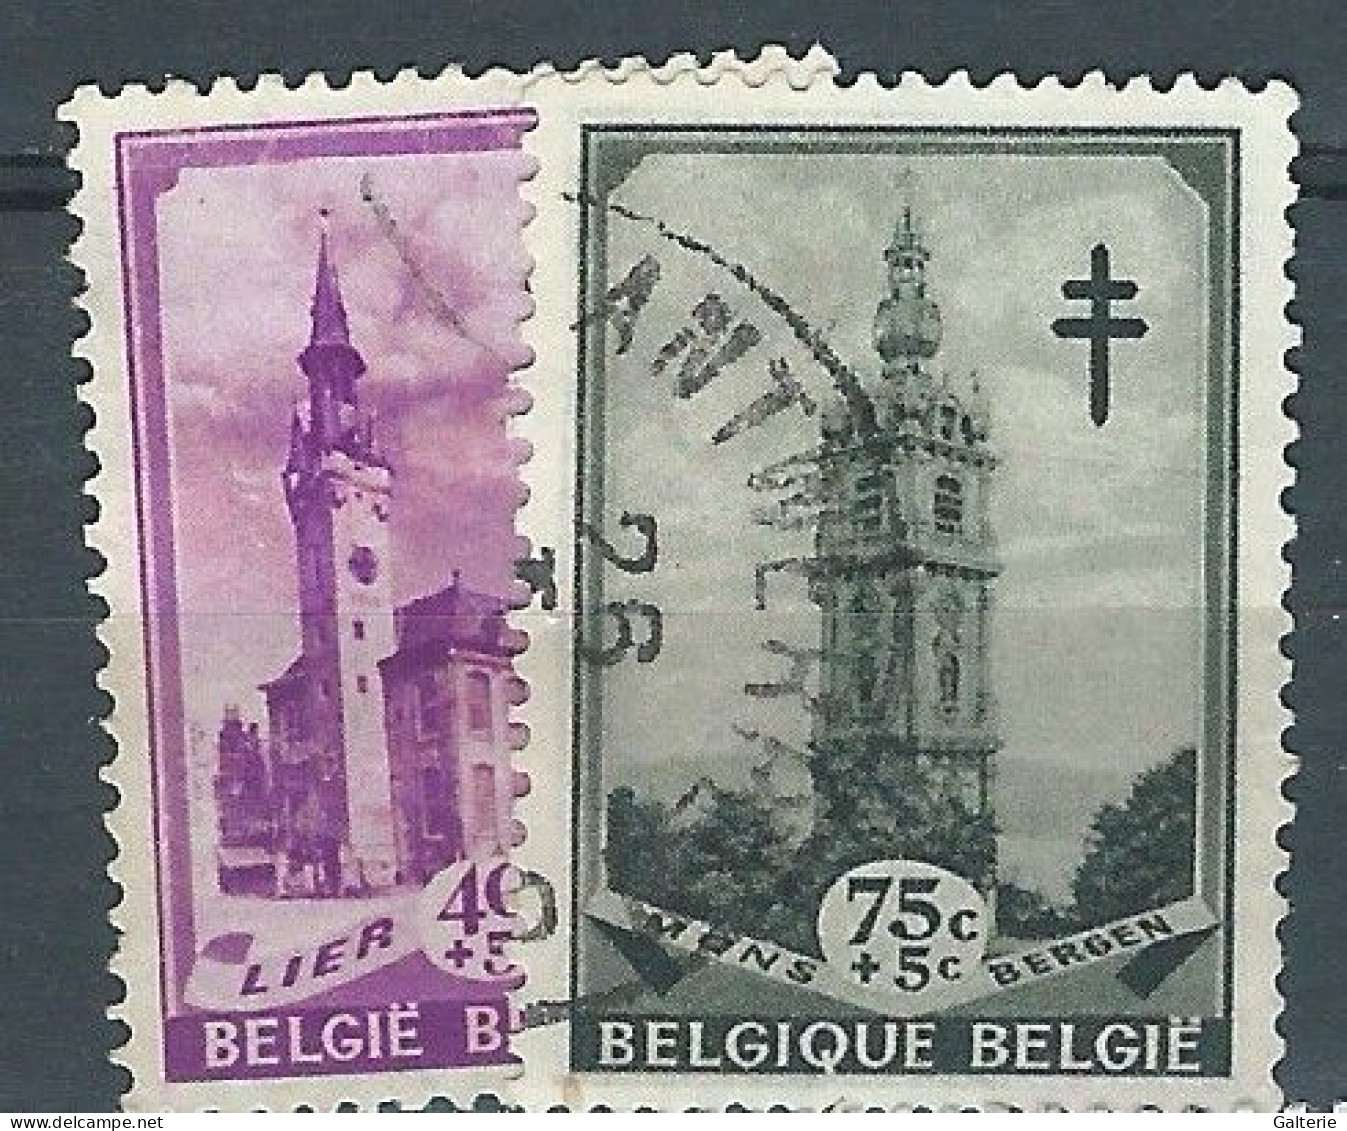 BELGIQUE -obl-1939 - COB N° 521-522- Beffrois - Oblitérés